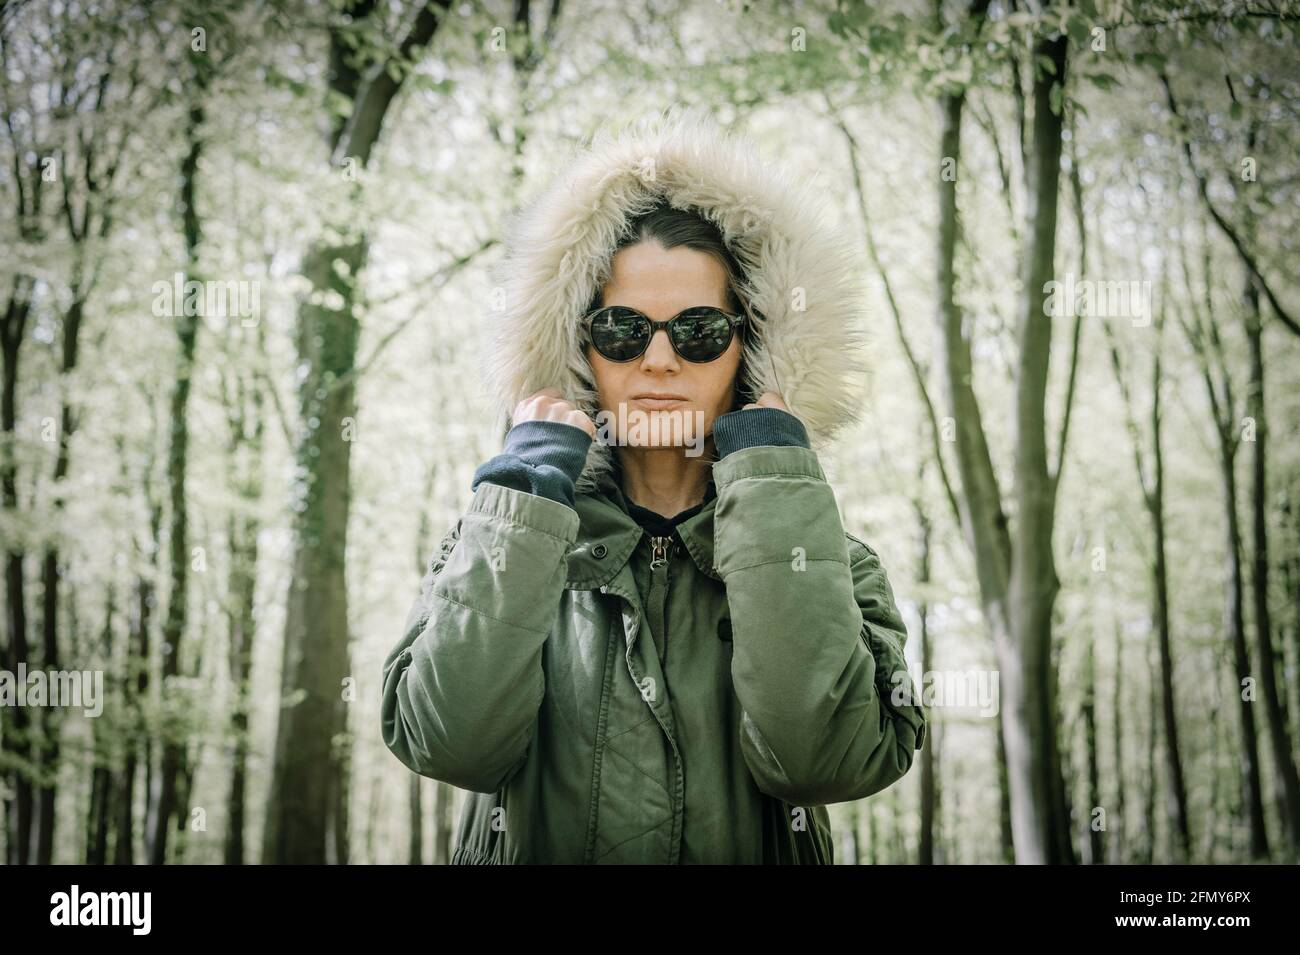 Frau trägt einen Parka Mantel mit der Kapuze oben stehend in einem Wald. Starke weibliche Konzept. Stockfoto